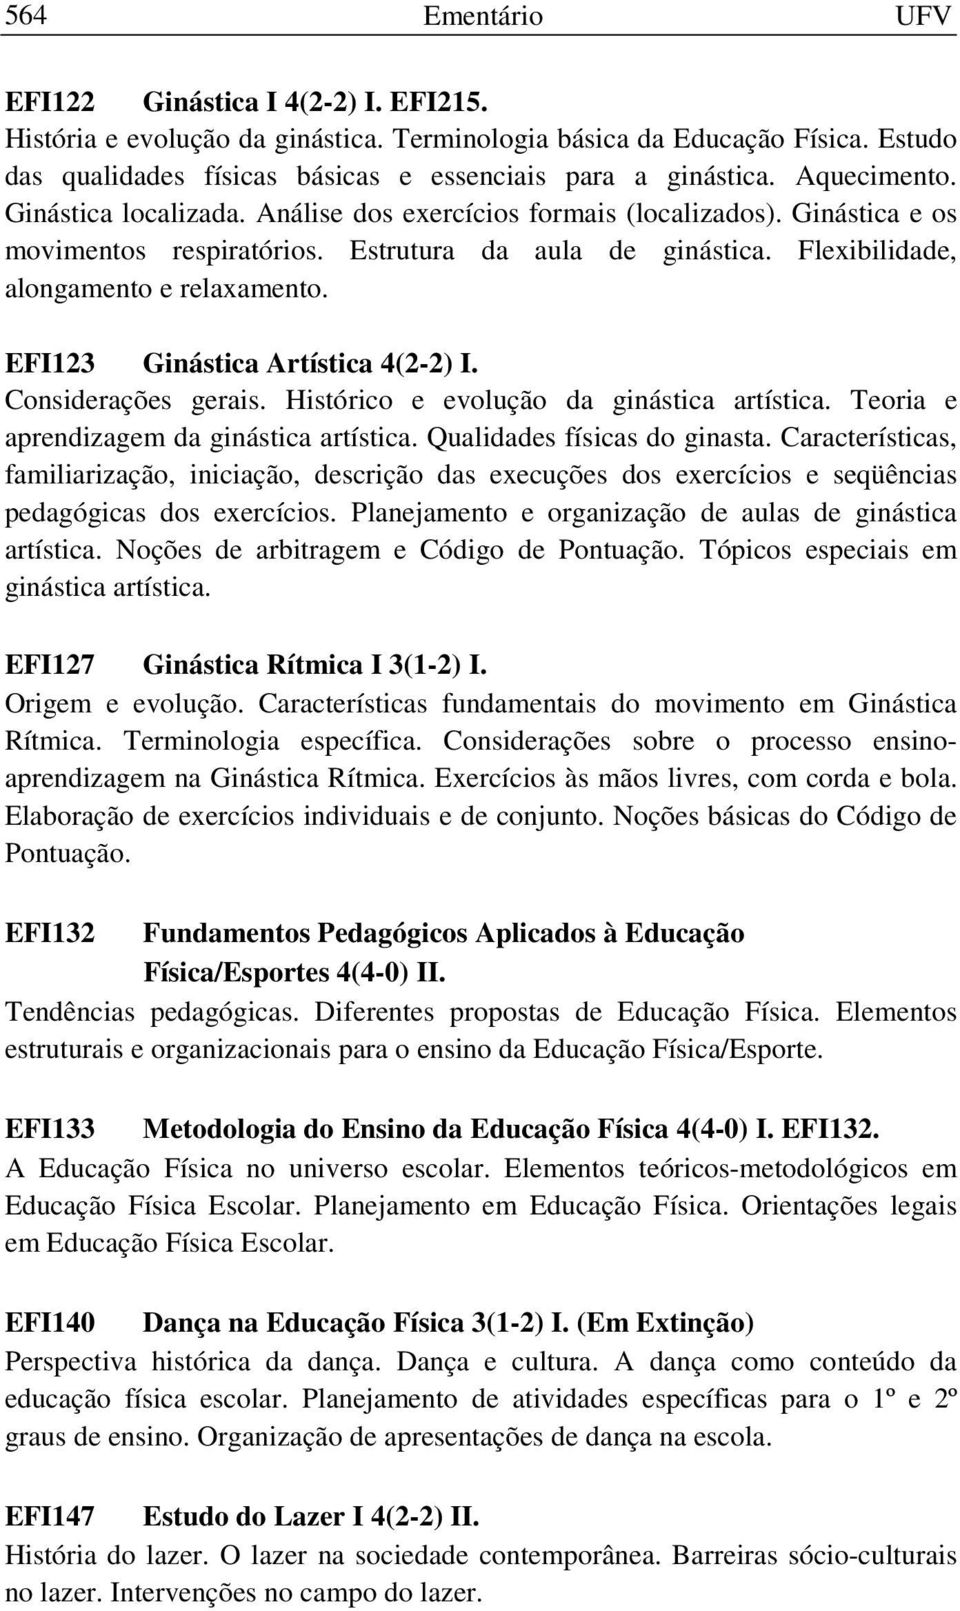 EFI123 Ginástica Artística 4(2-2) I. Considerações gerais. Histórico e evolução da ginástica artística. Teoria e aprendizagem da ginástica artística. Qualidades físicas do ginasta.